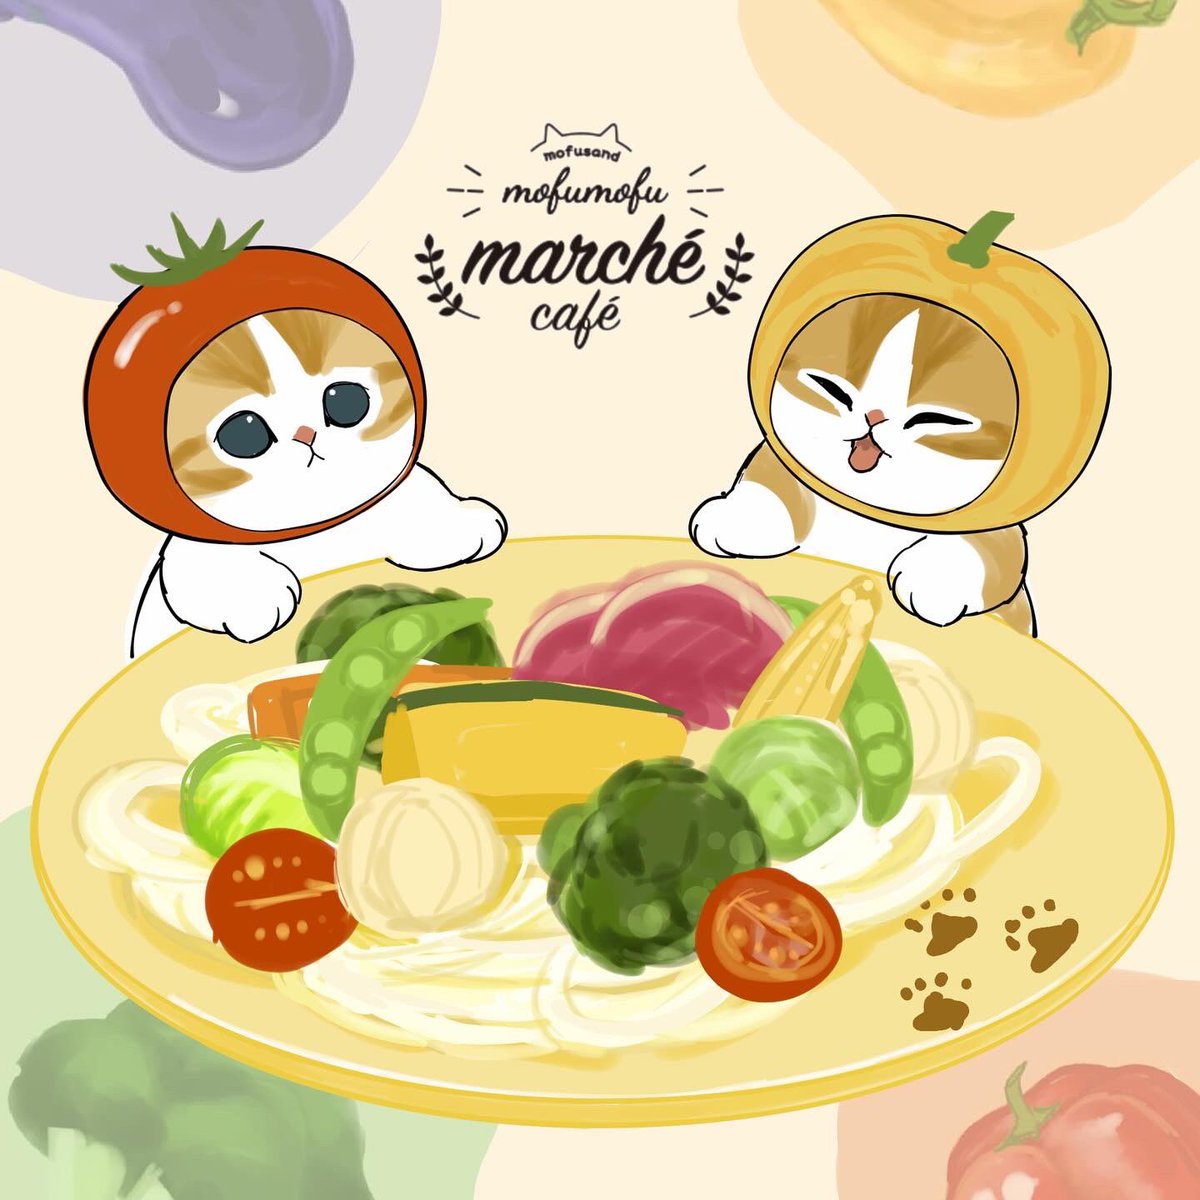 #mofusandもふもふマルシェカフェ 「mofusand もふもふ marché café」 メニュー紹介✨ 🍝グラにゃんパスタ お野菜がゴロゴロと入ったクリームパスタ。 トマトとかぼちゃのにゃんこが野菜に紛れてます😽 🍅カフェ事前ご予約受付中です🎃 mofusandmarche.th-cafe.jp